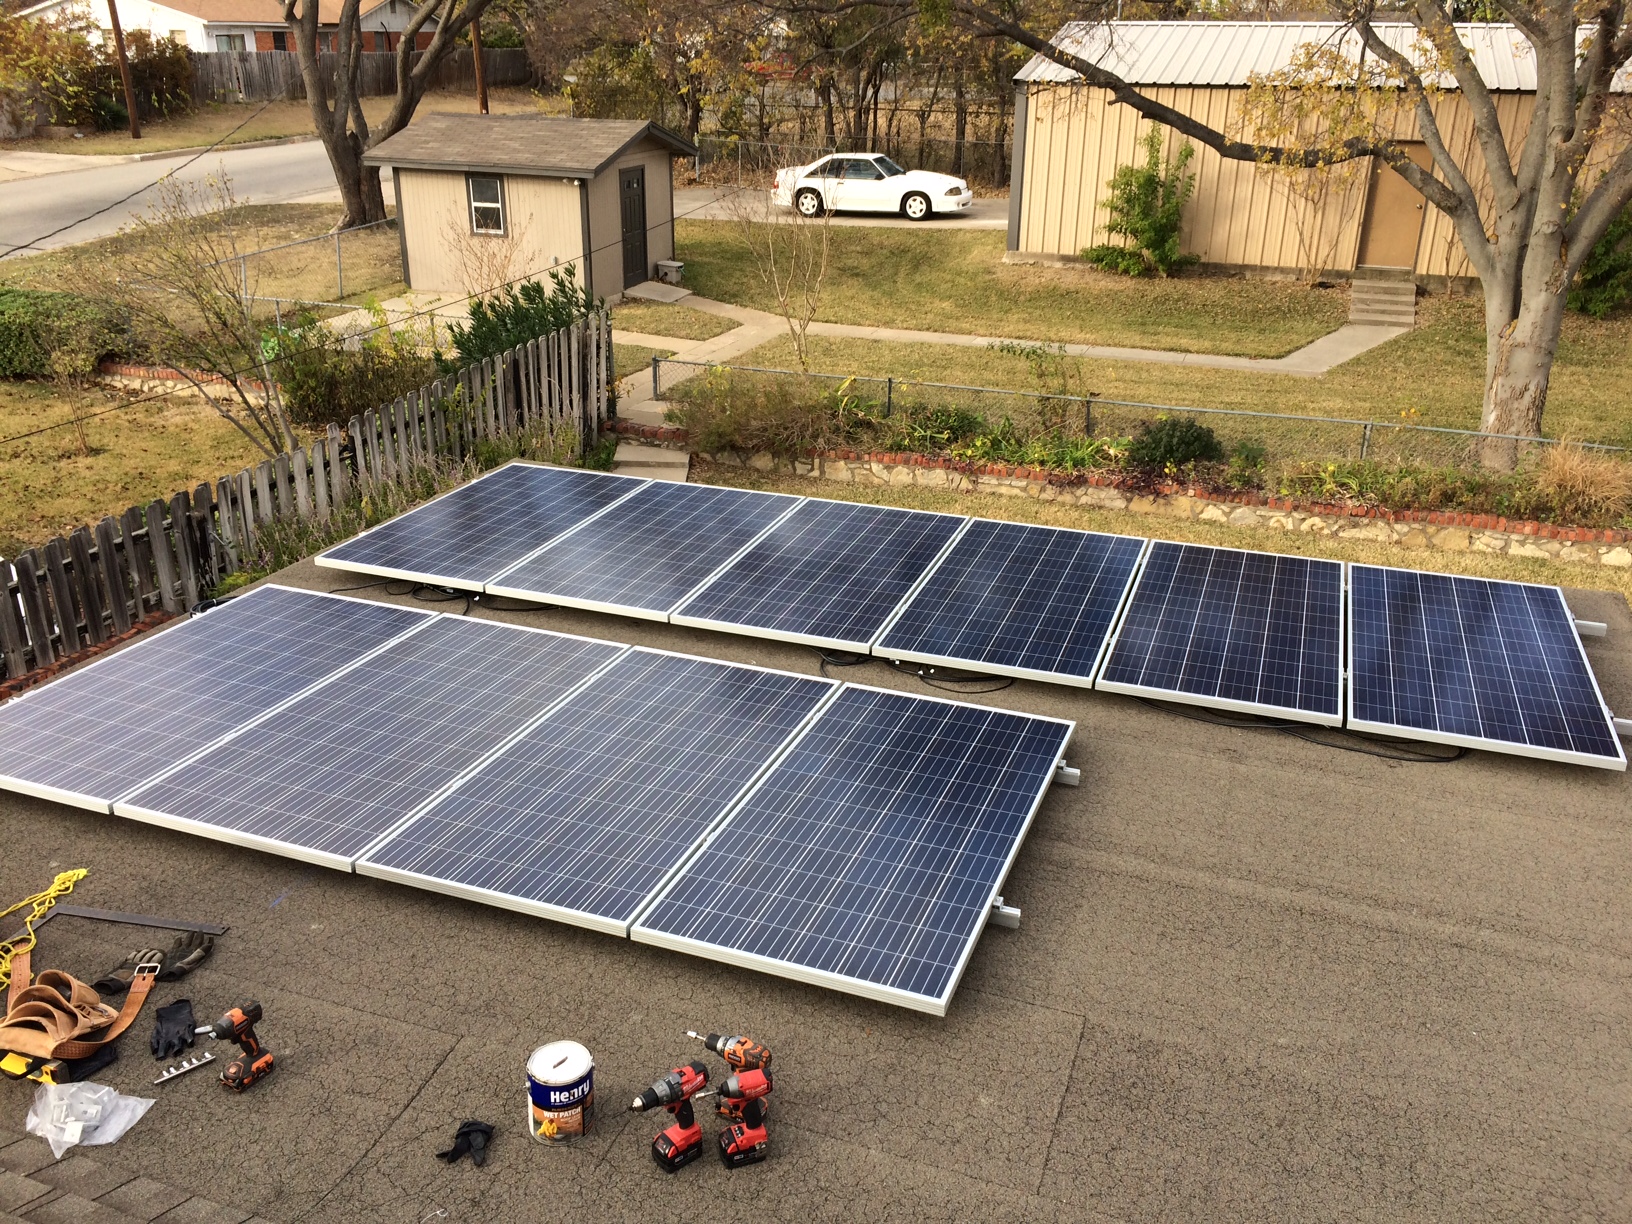 칠레 : 작은 태양 공원 프로젝트가 유행에있다.